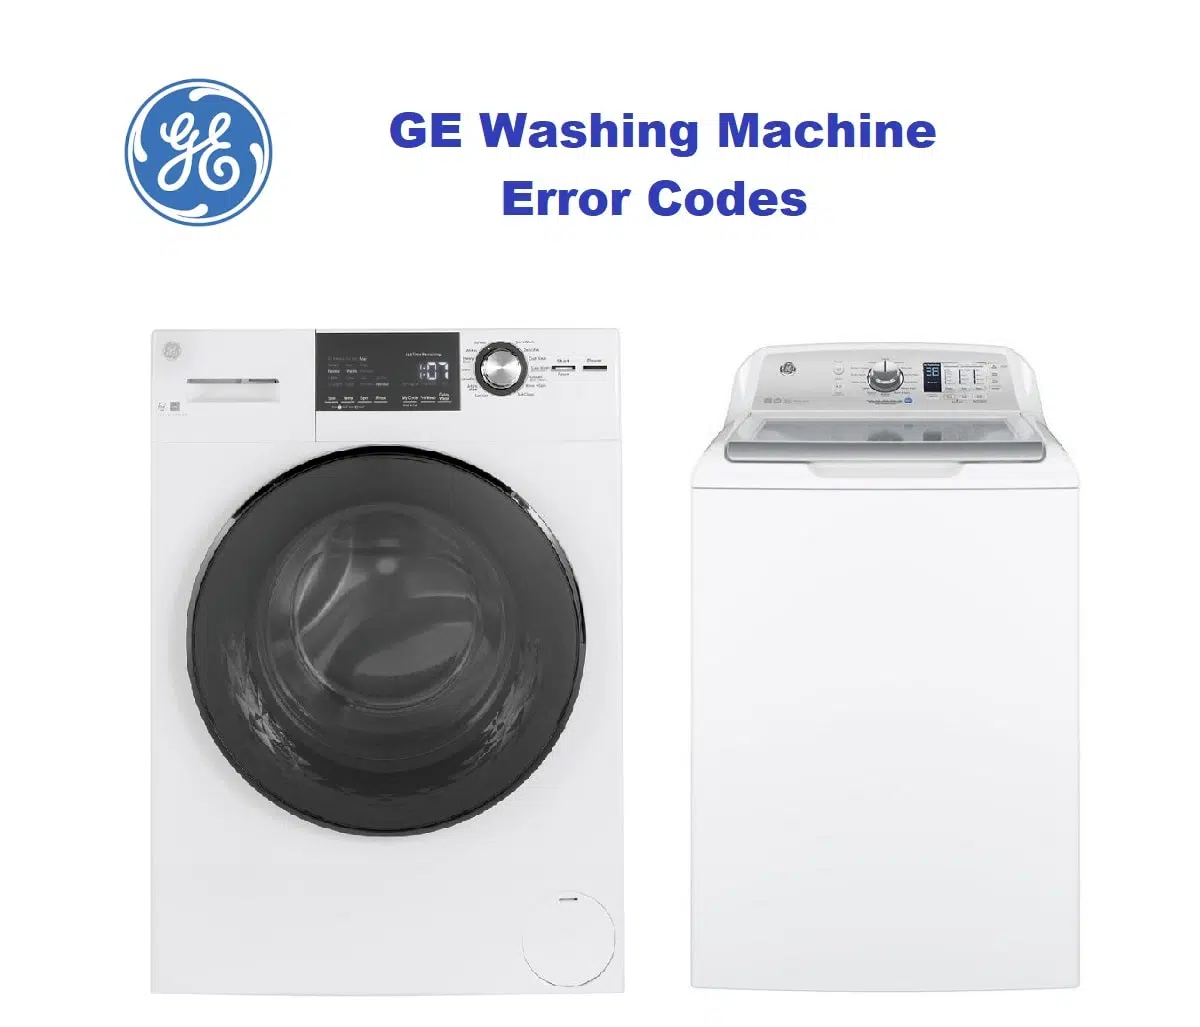 GE Washing Machine Error Codes